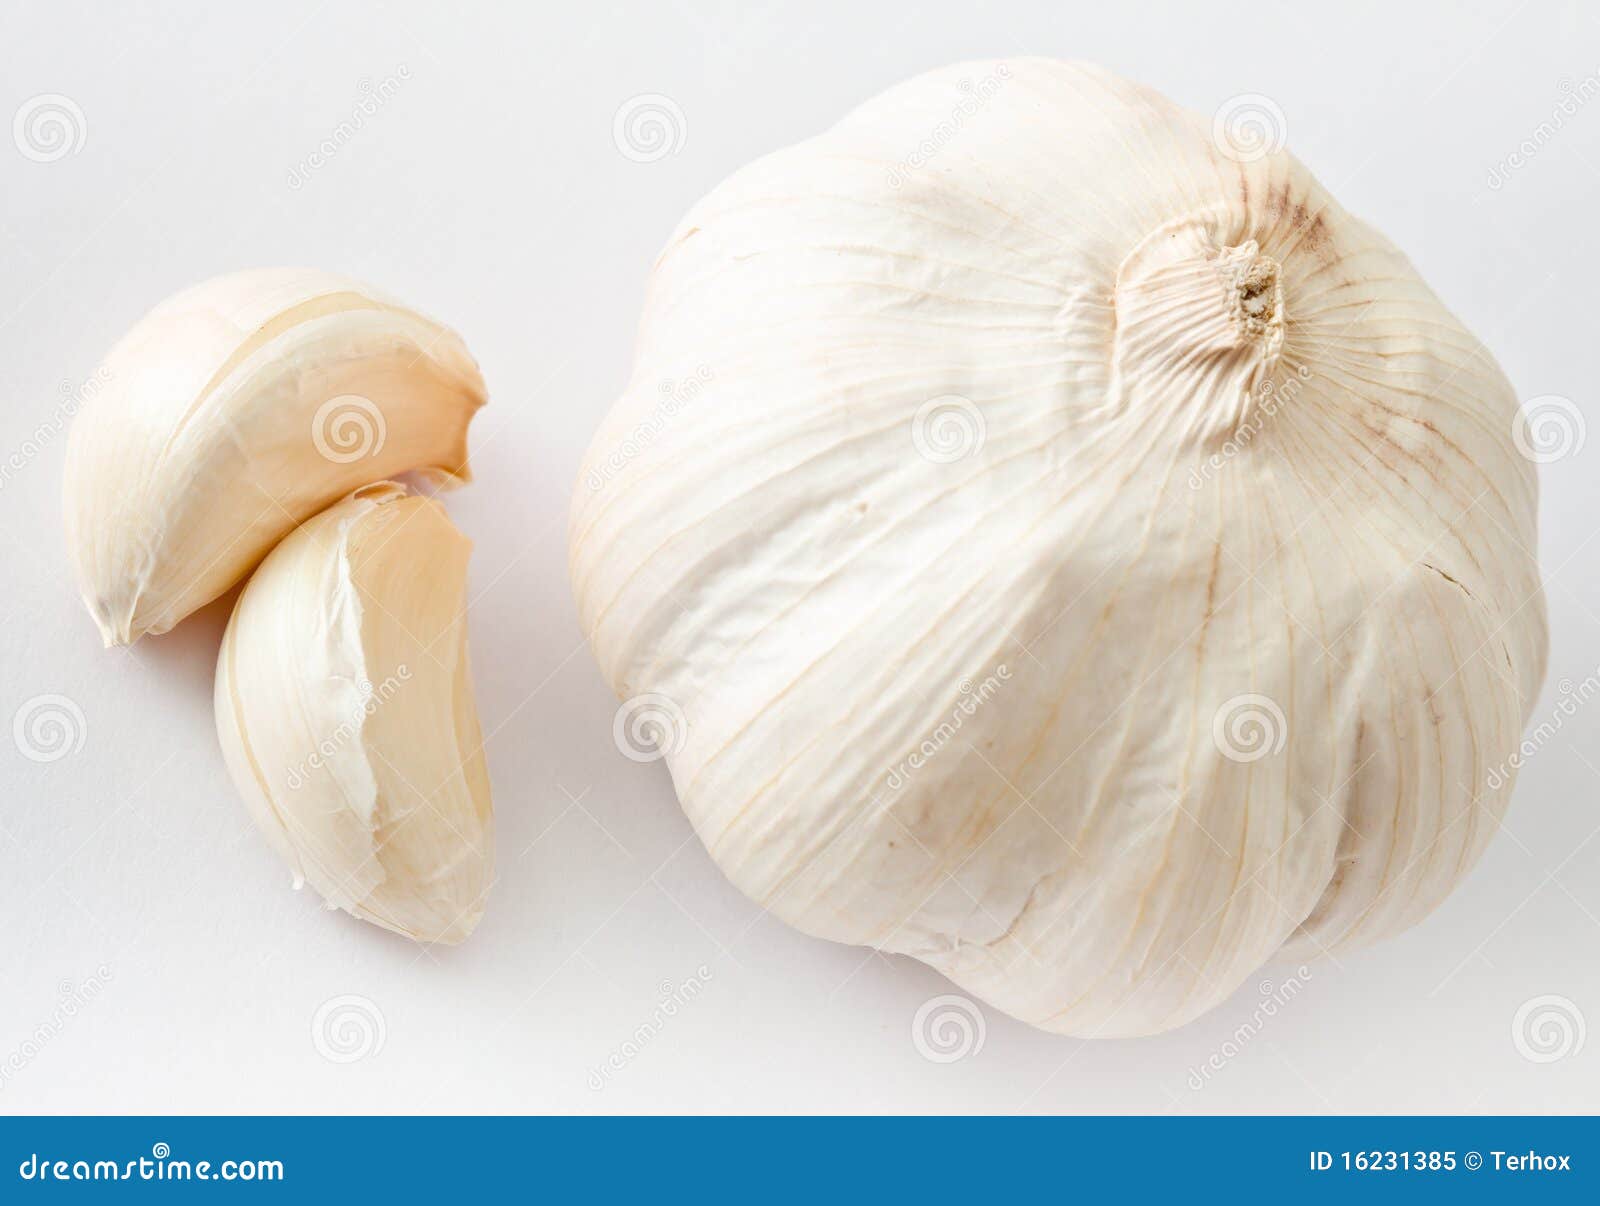 Fresh garlic stock image. Image of garlic, eating, fresh - 16231385